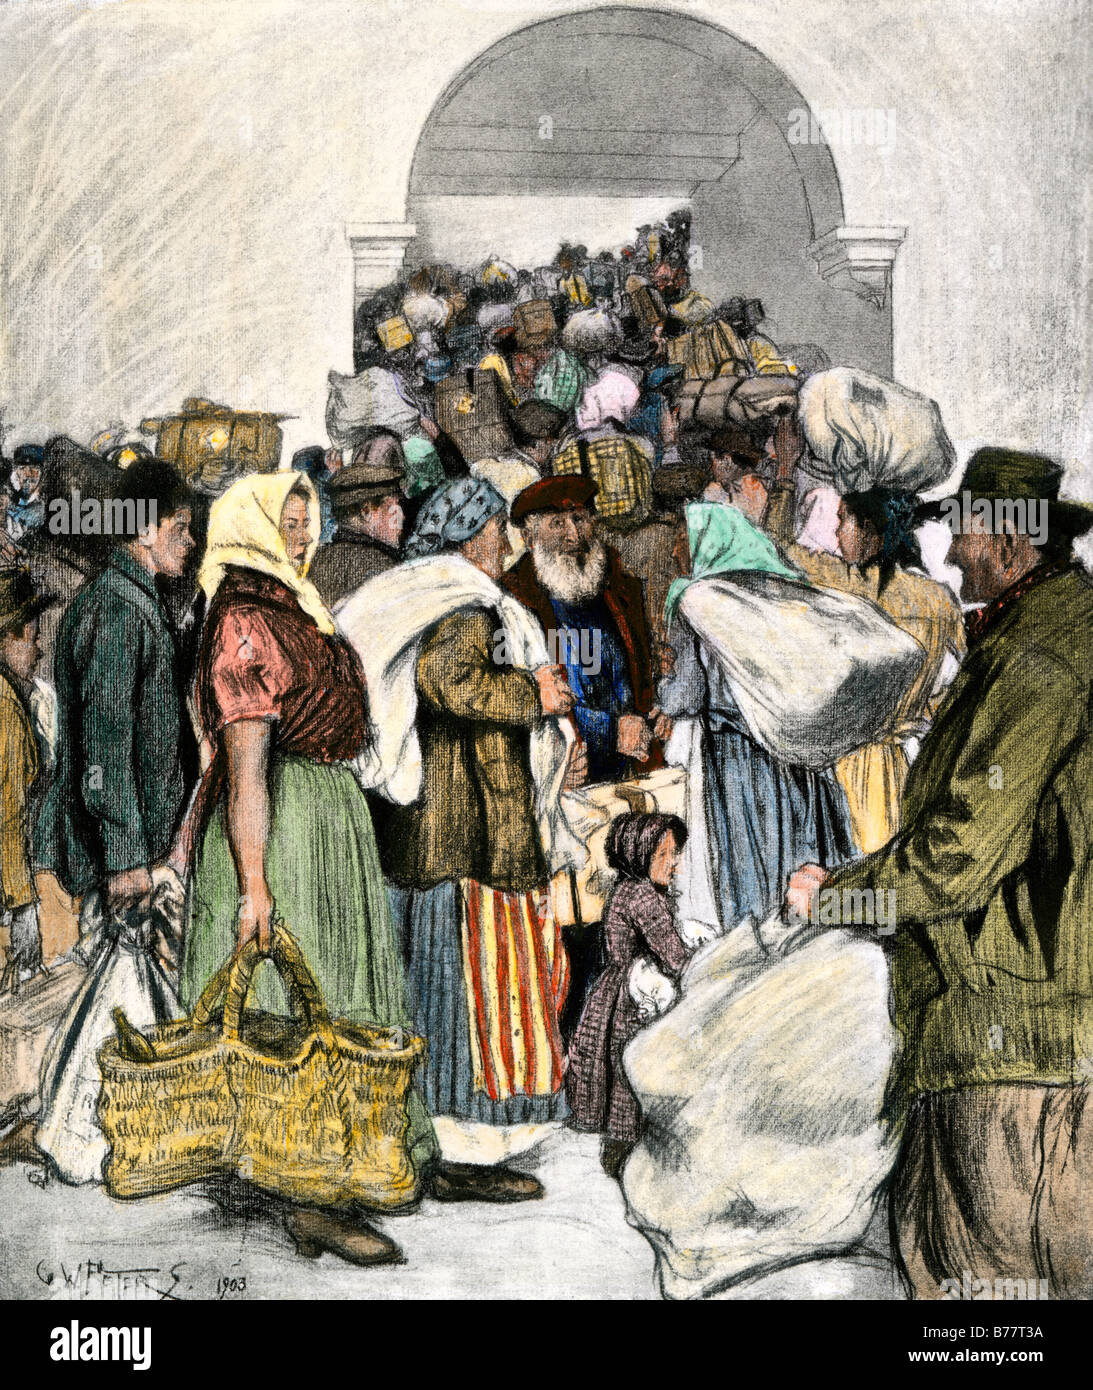 Europäische Einwanderer auf Ellis Island in New York City 1903. Handcolorierte halftone einer Abbildung Stockfoto